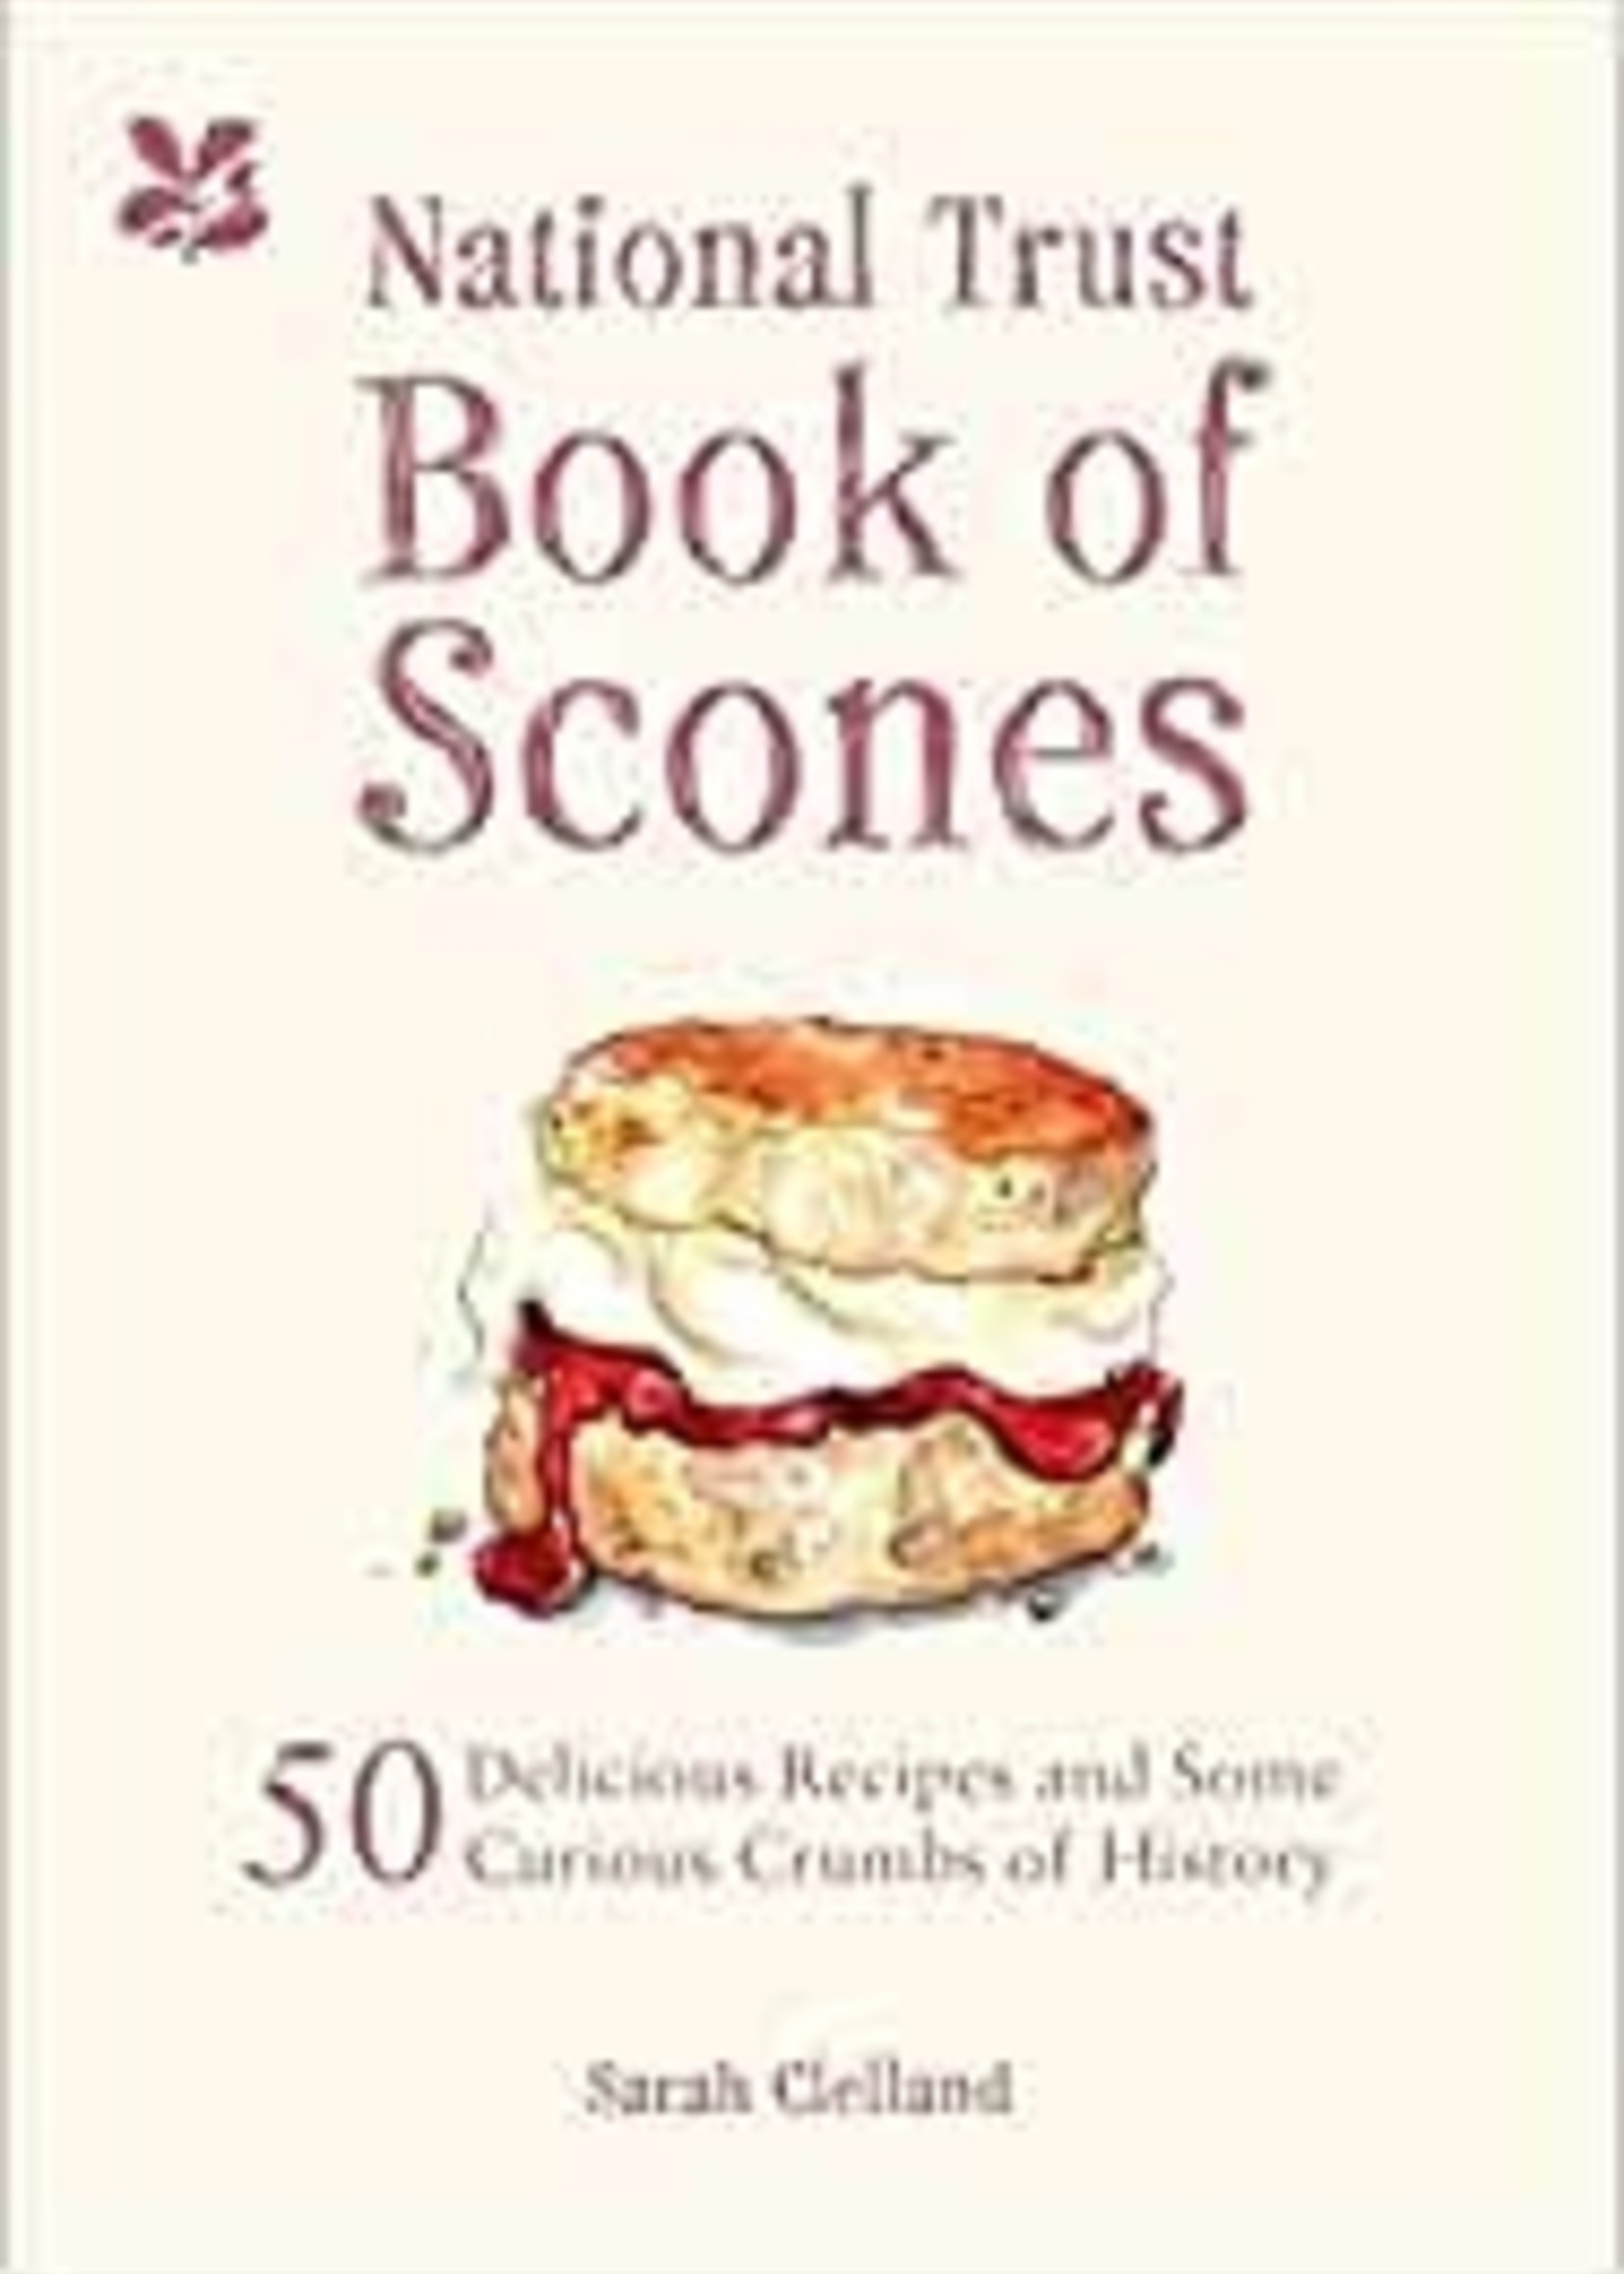 Book of scones -Sarah Merker